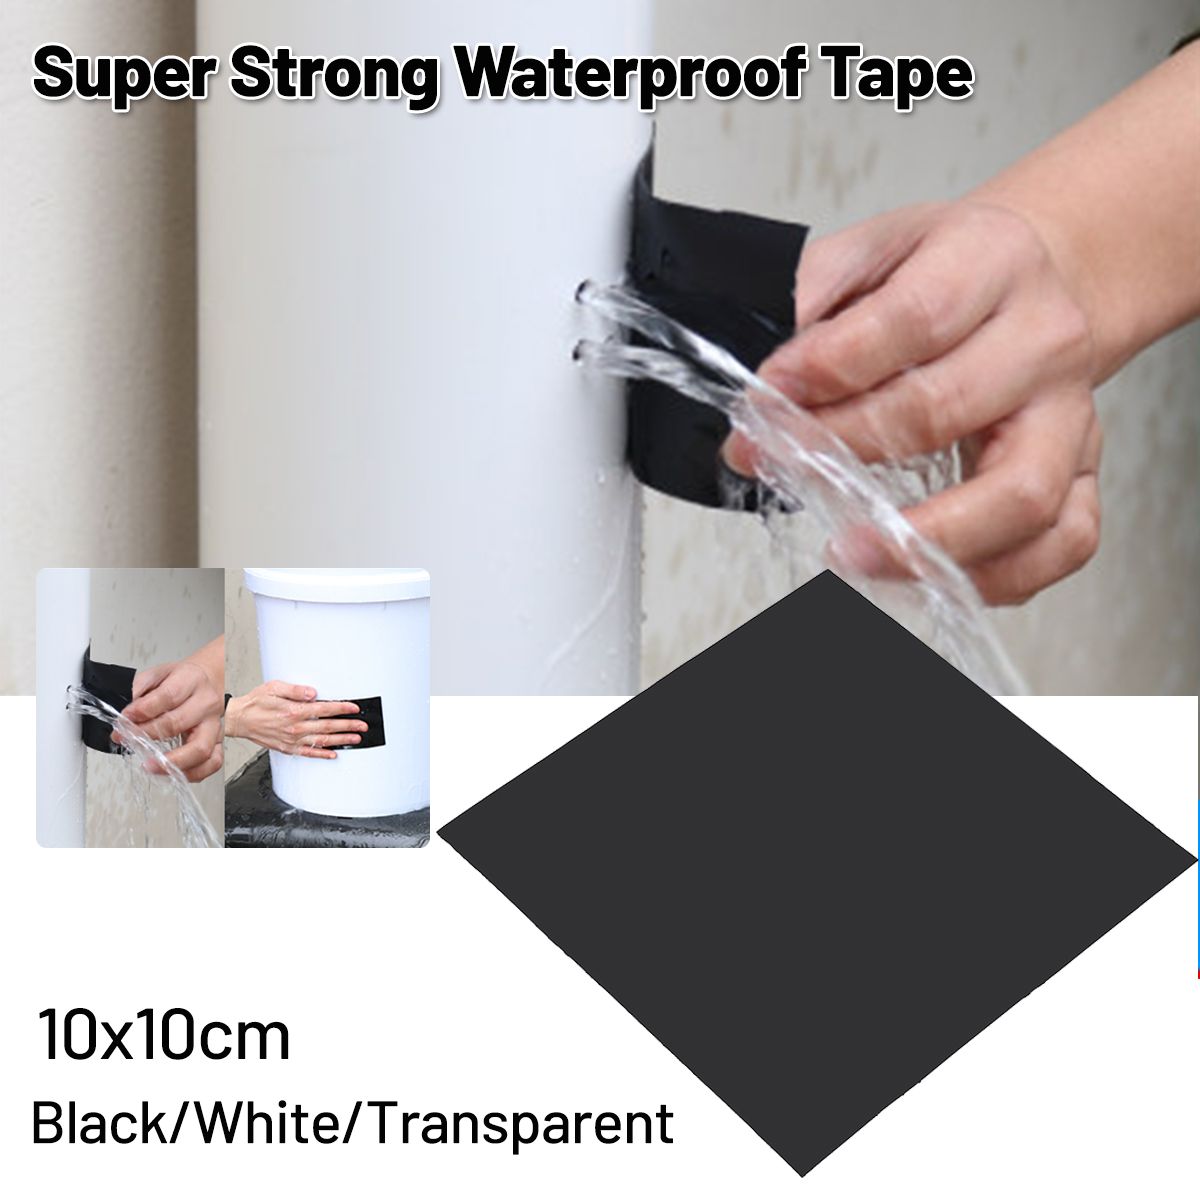 10x10cm-Super-Strong-Fiber-Waterproof-Tape-Stop-Leaks-Repair-Fix-Adhesive-Tape-1665444